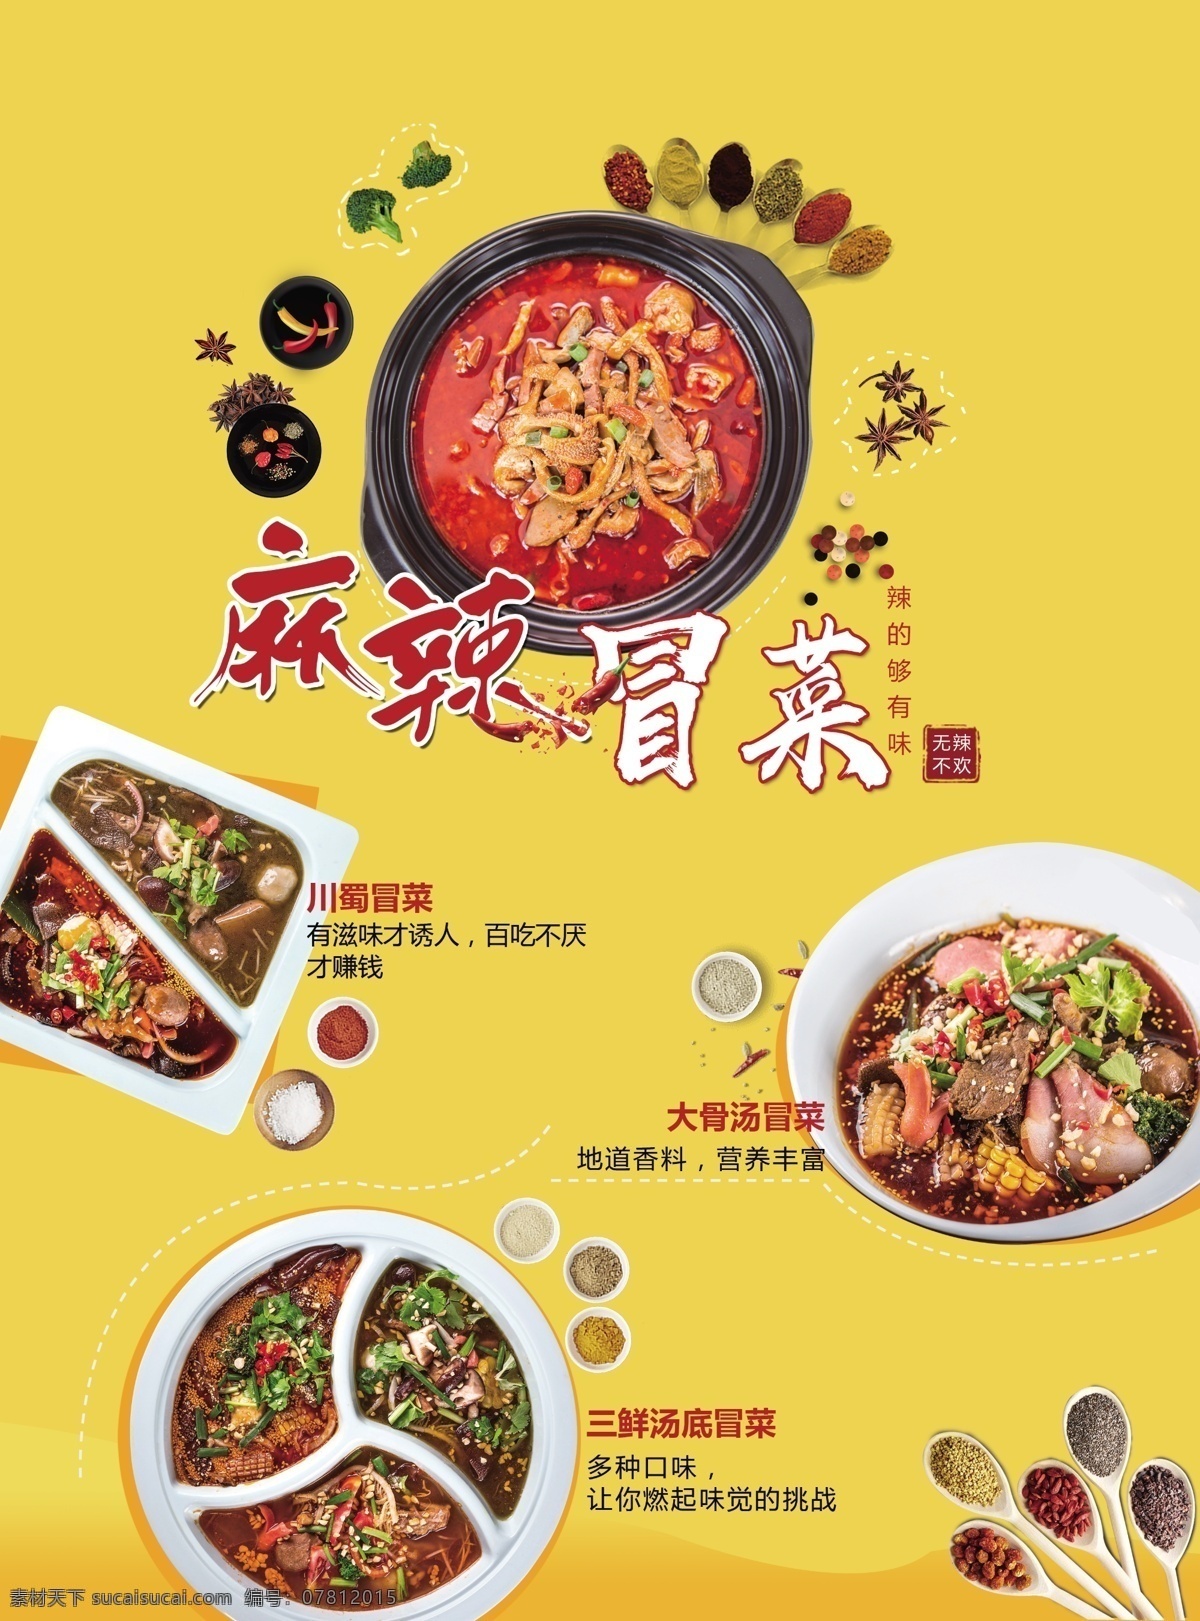 麻辣 菜 产品 美食 海报 产品展示 火锅 麻辣串 麻辣香锅 展板